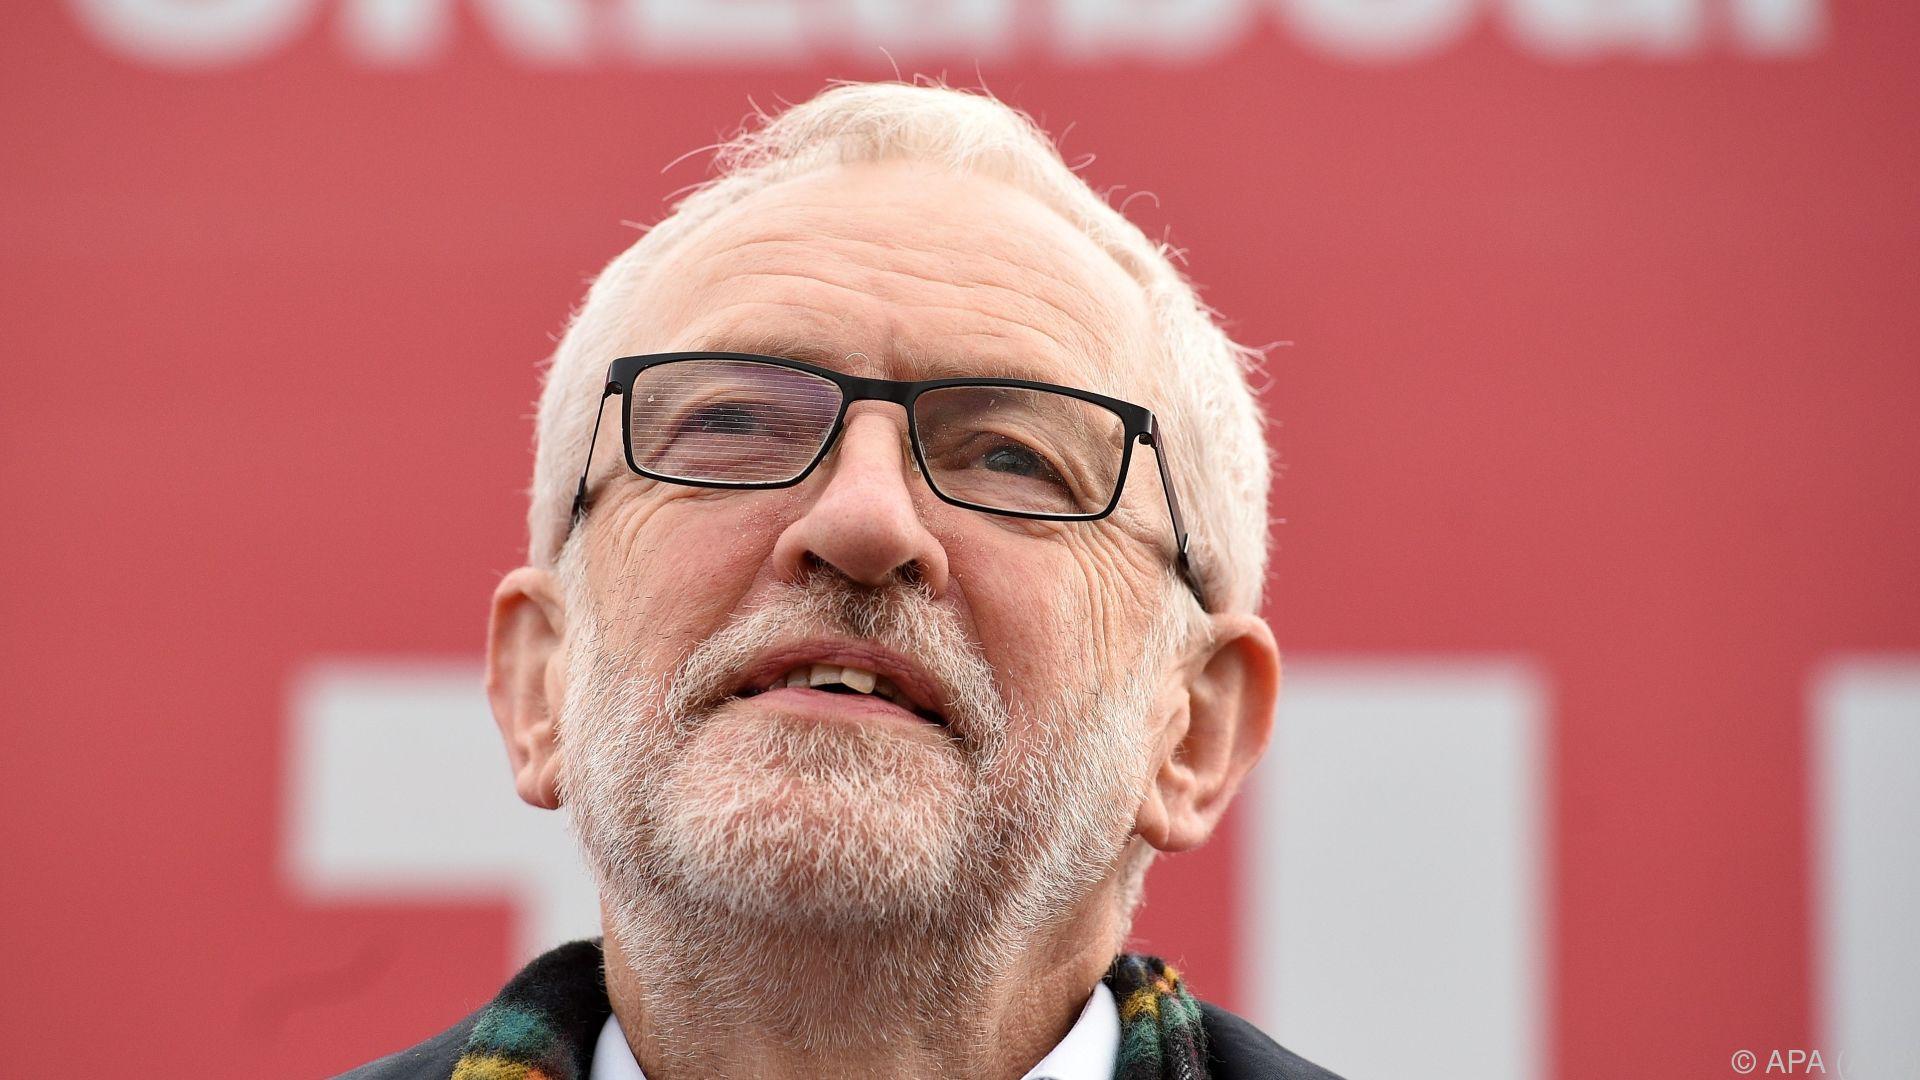 Labour will ehemaligen Parteichef Corbyn wieder aufnehmen